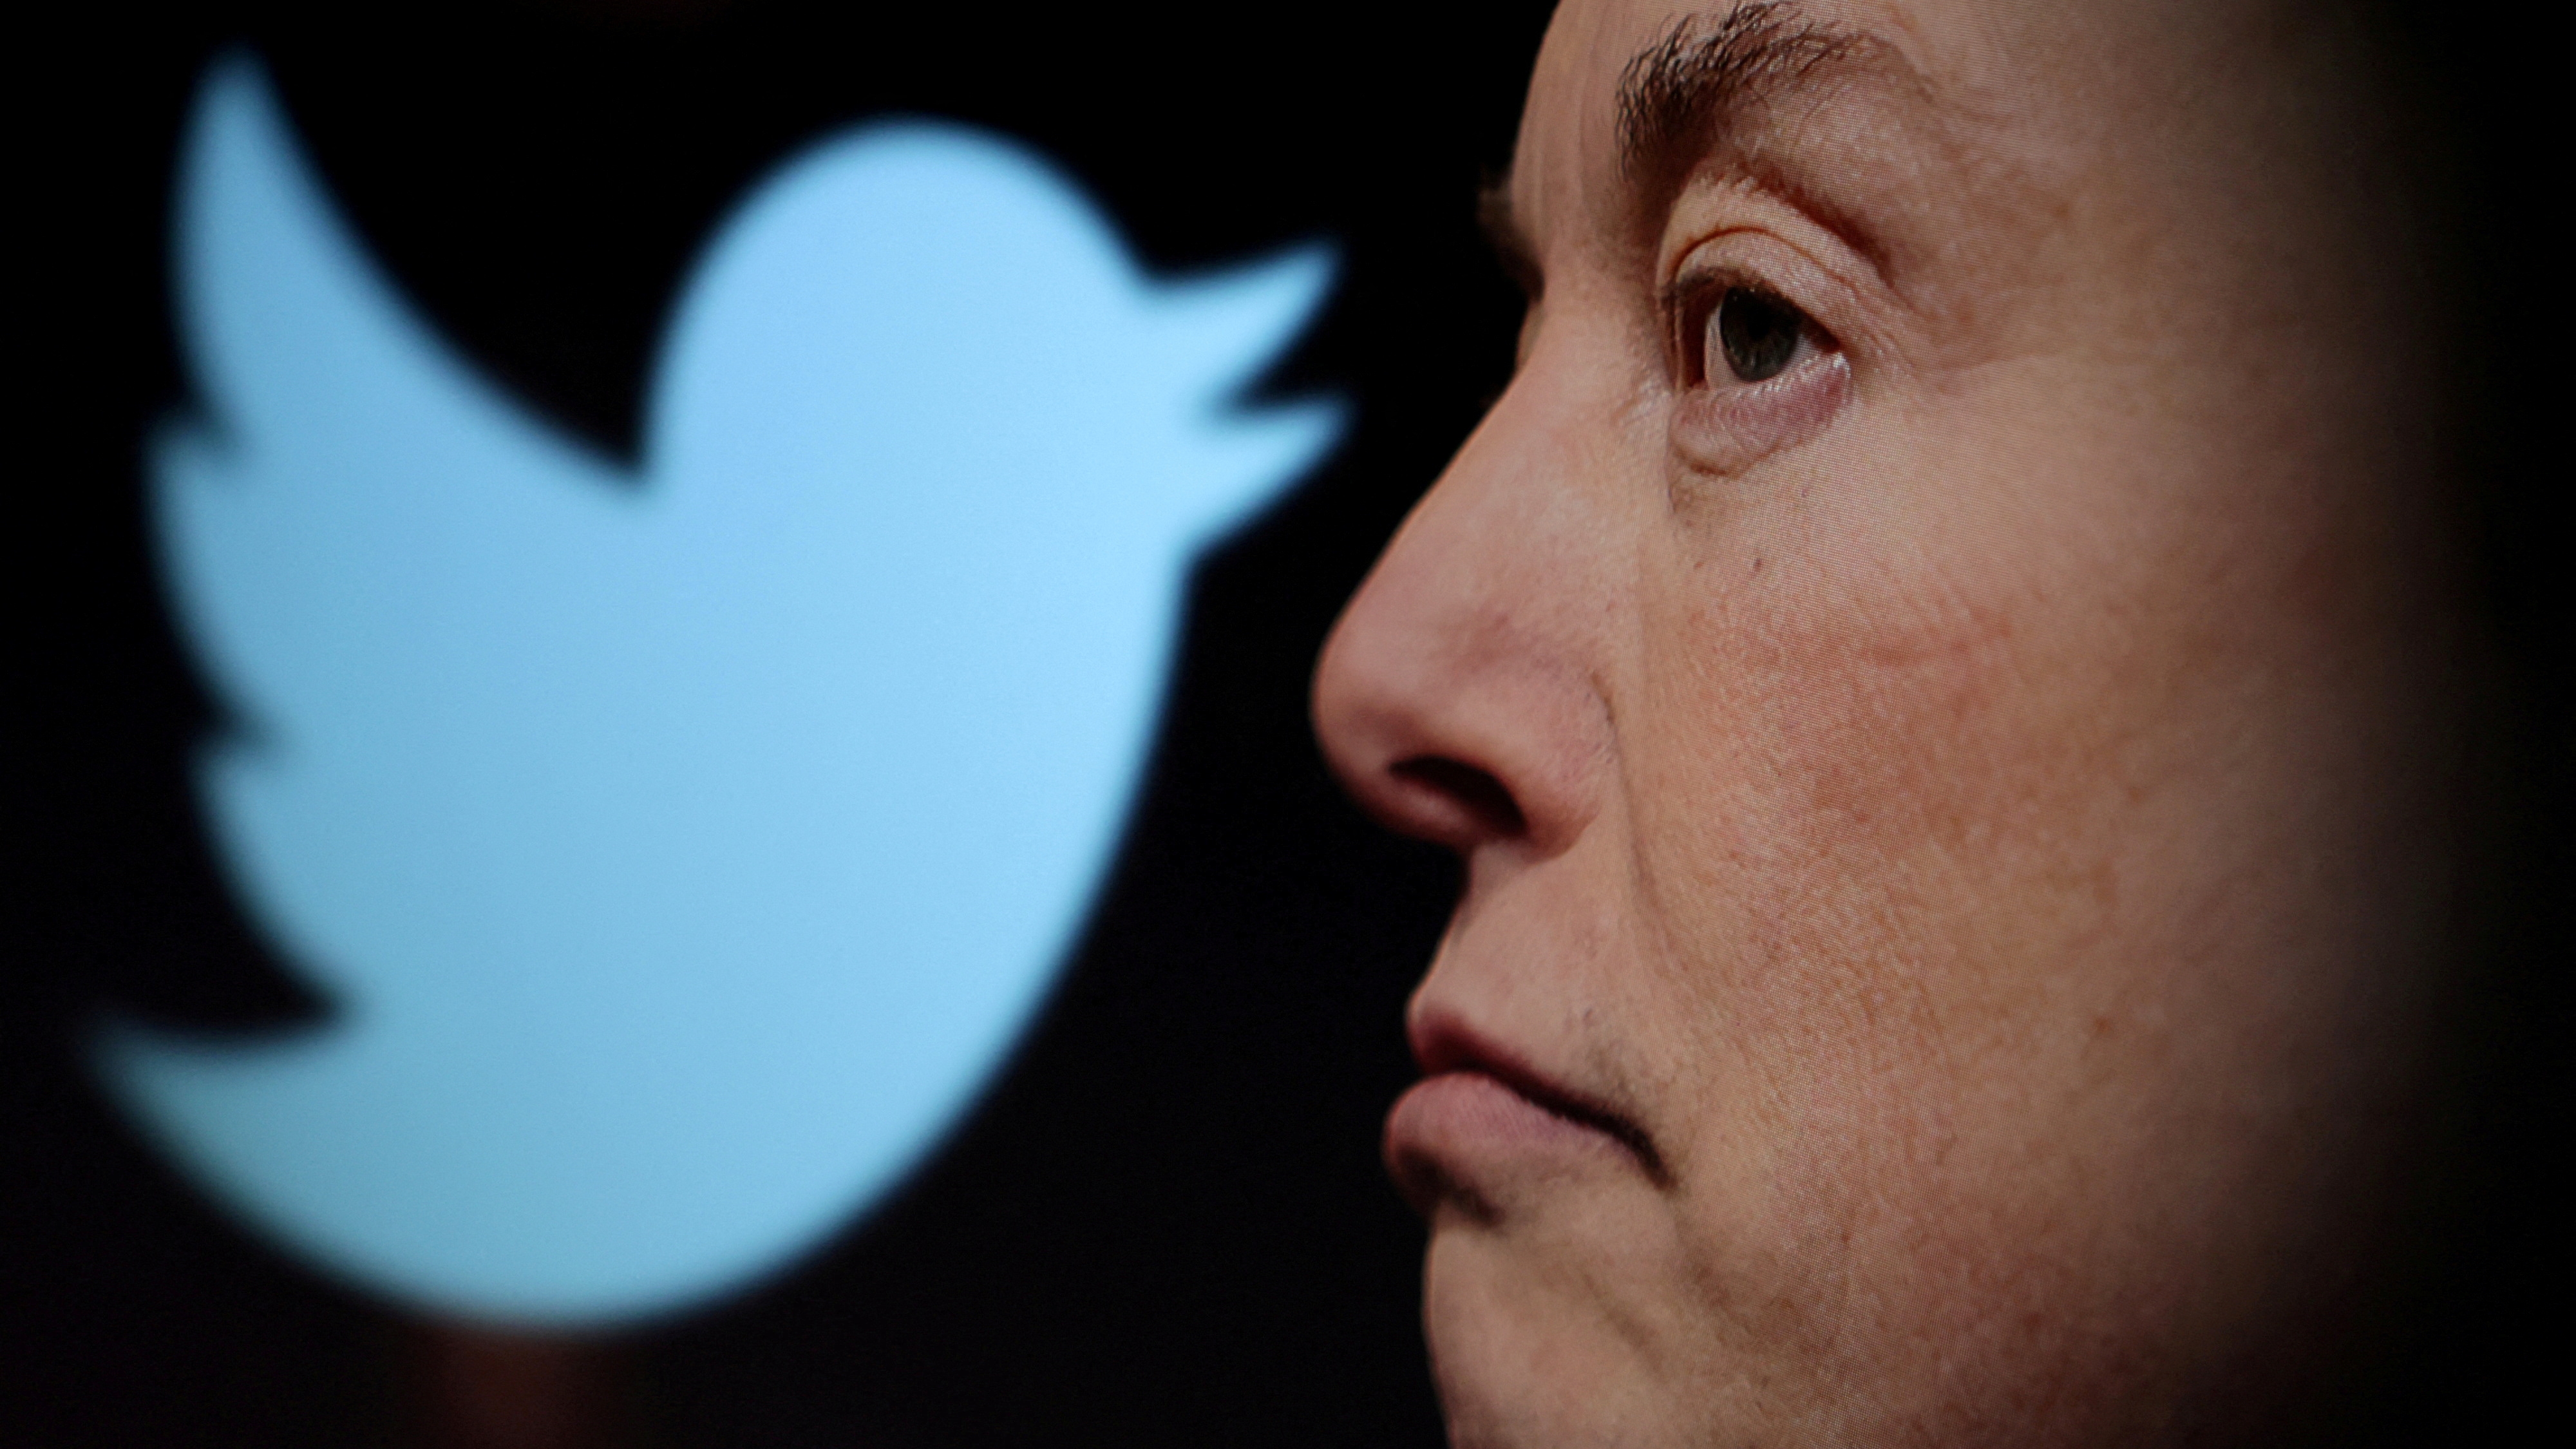 Elon Musk advirtió que quienes suplanten identidad en Twitter serán suspendidos permanentemente. (REUTERS/Dado Ruvic/Archivo)